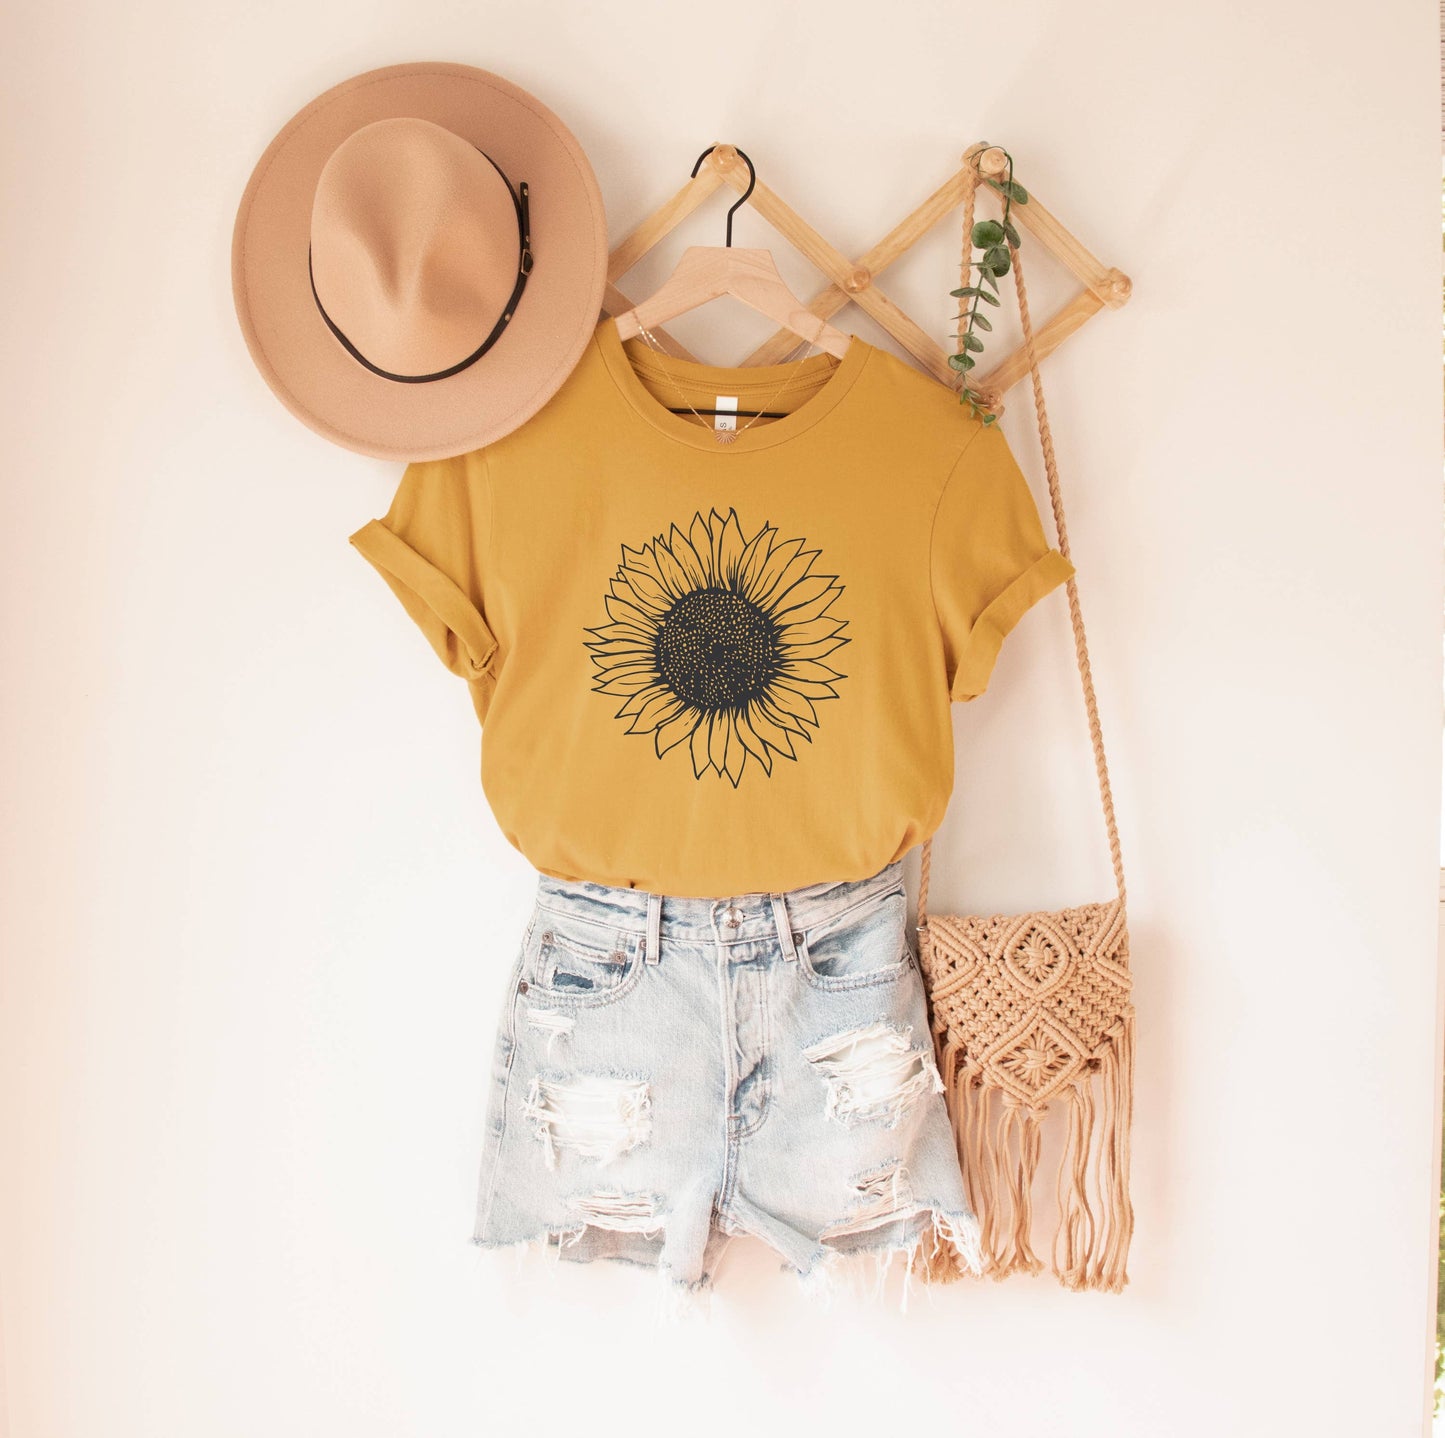 Sunflower Shirt - Flower Shirt - Boutique Bestseller - Storm and Sky Shoppe